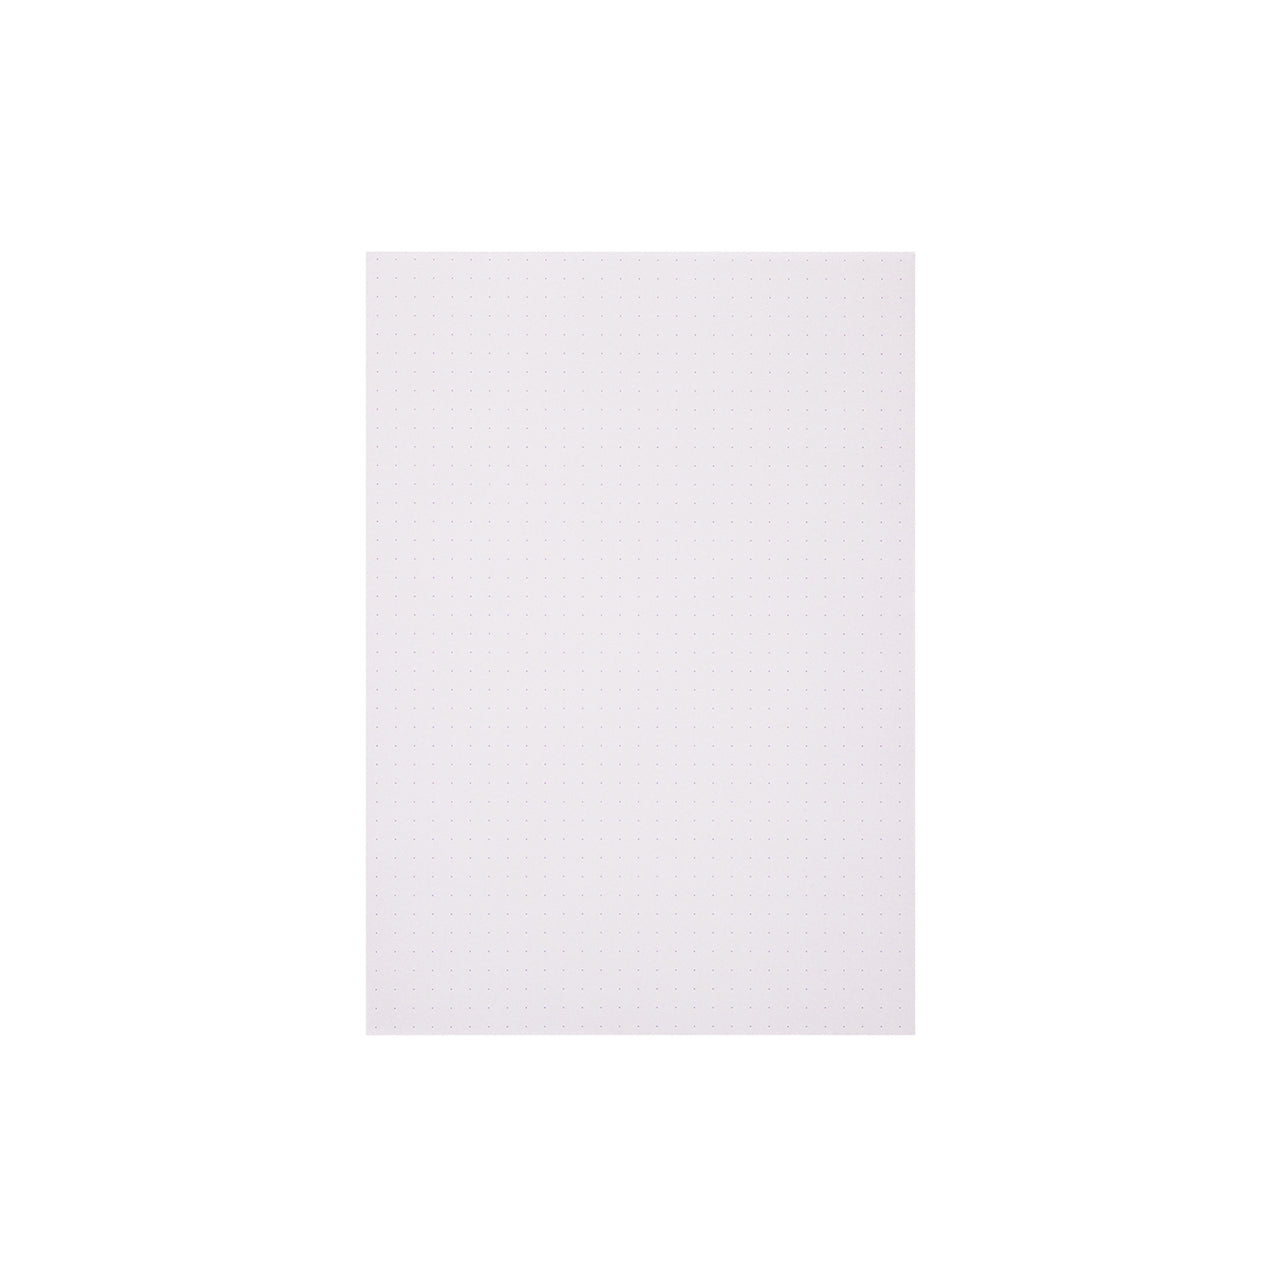 Midori MD Paper Pad Color Dot Grid